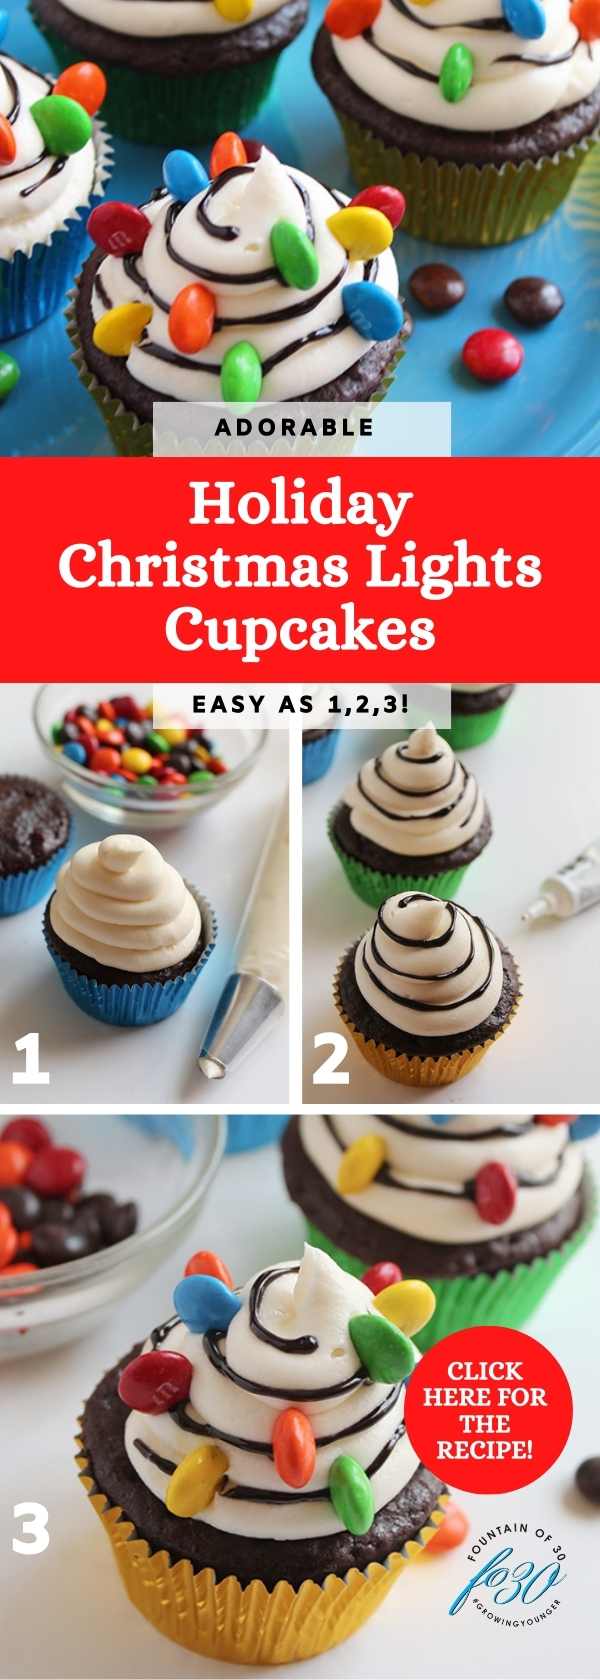 Christmas lights cupcakes easy as 1, 2, 3 fountainof30